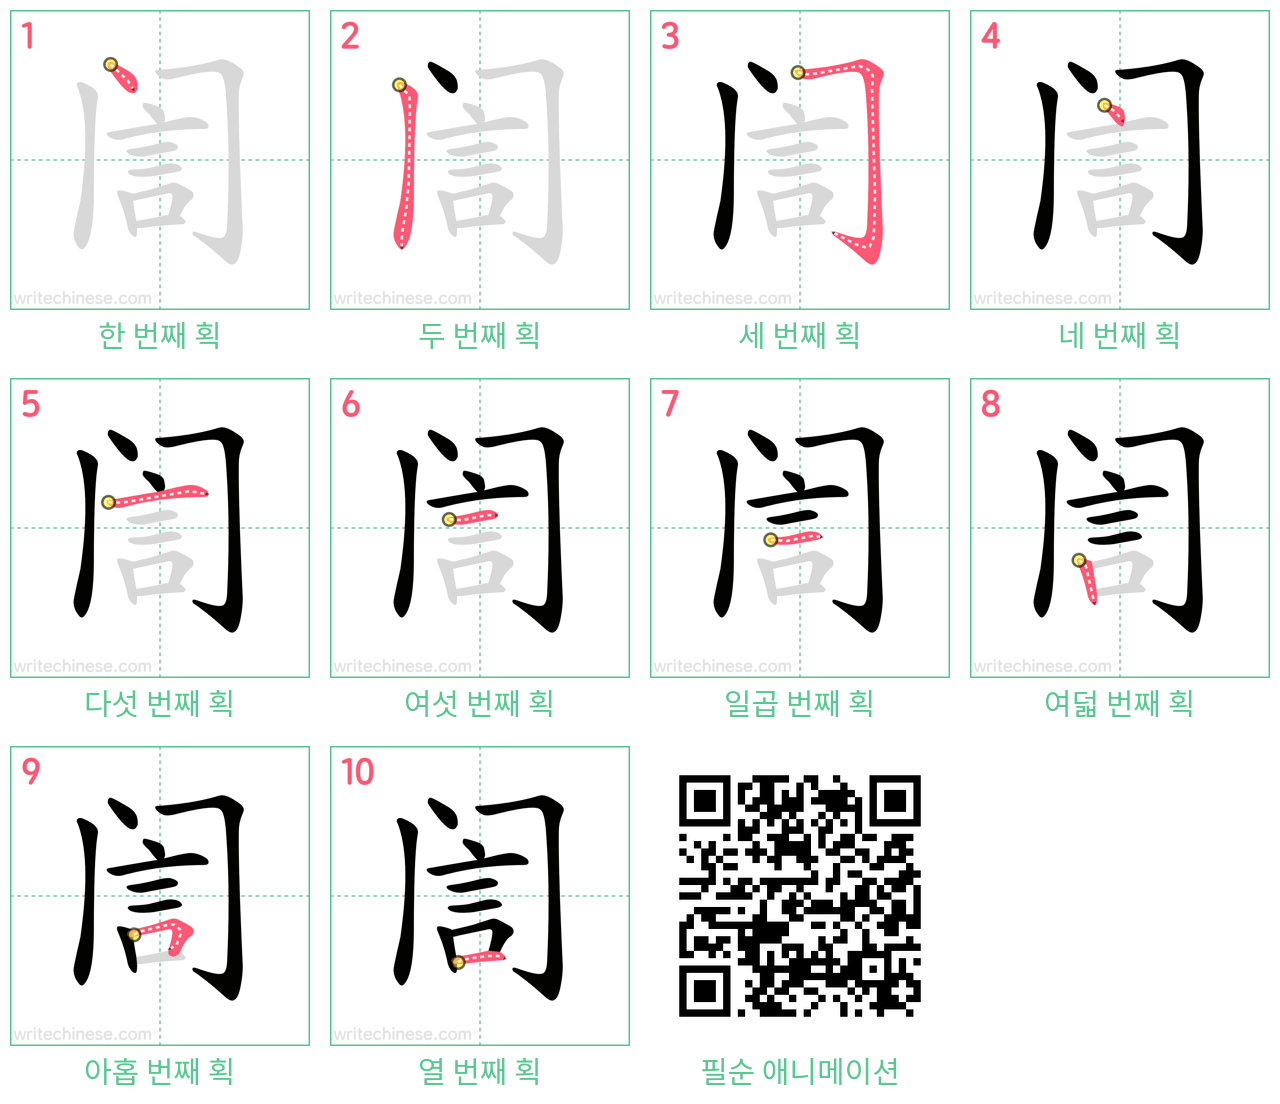 訚 step-by-step stroke order diagrams